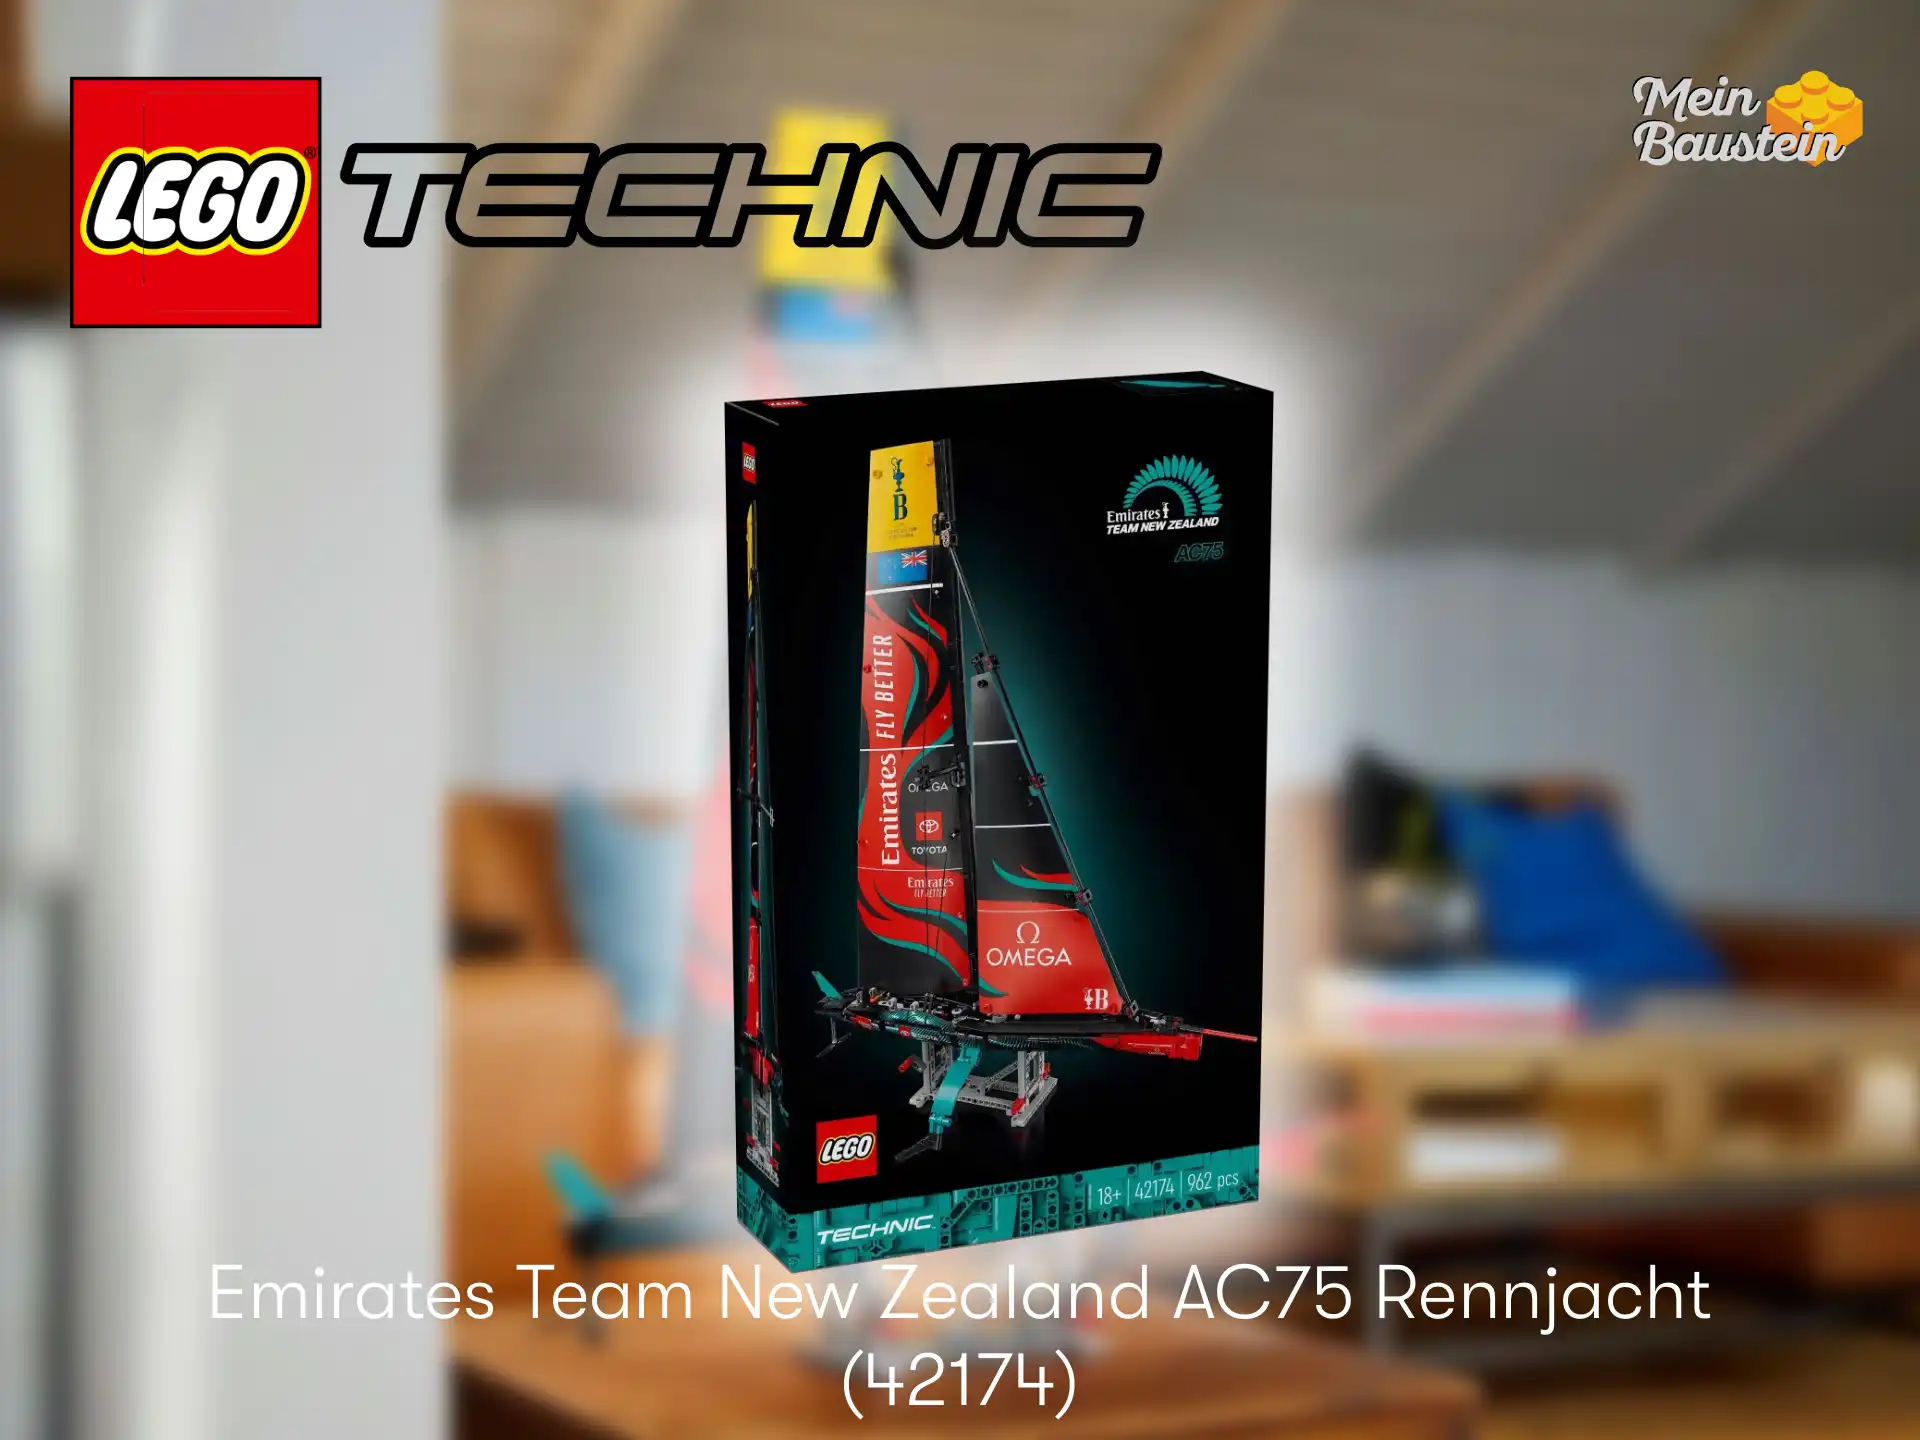 LEGO Emirates Team New Zealand AC75 Rennyacht 42174